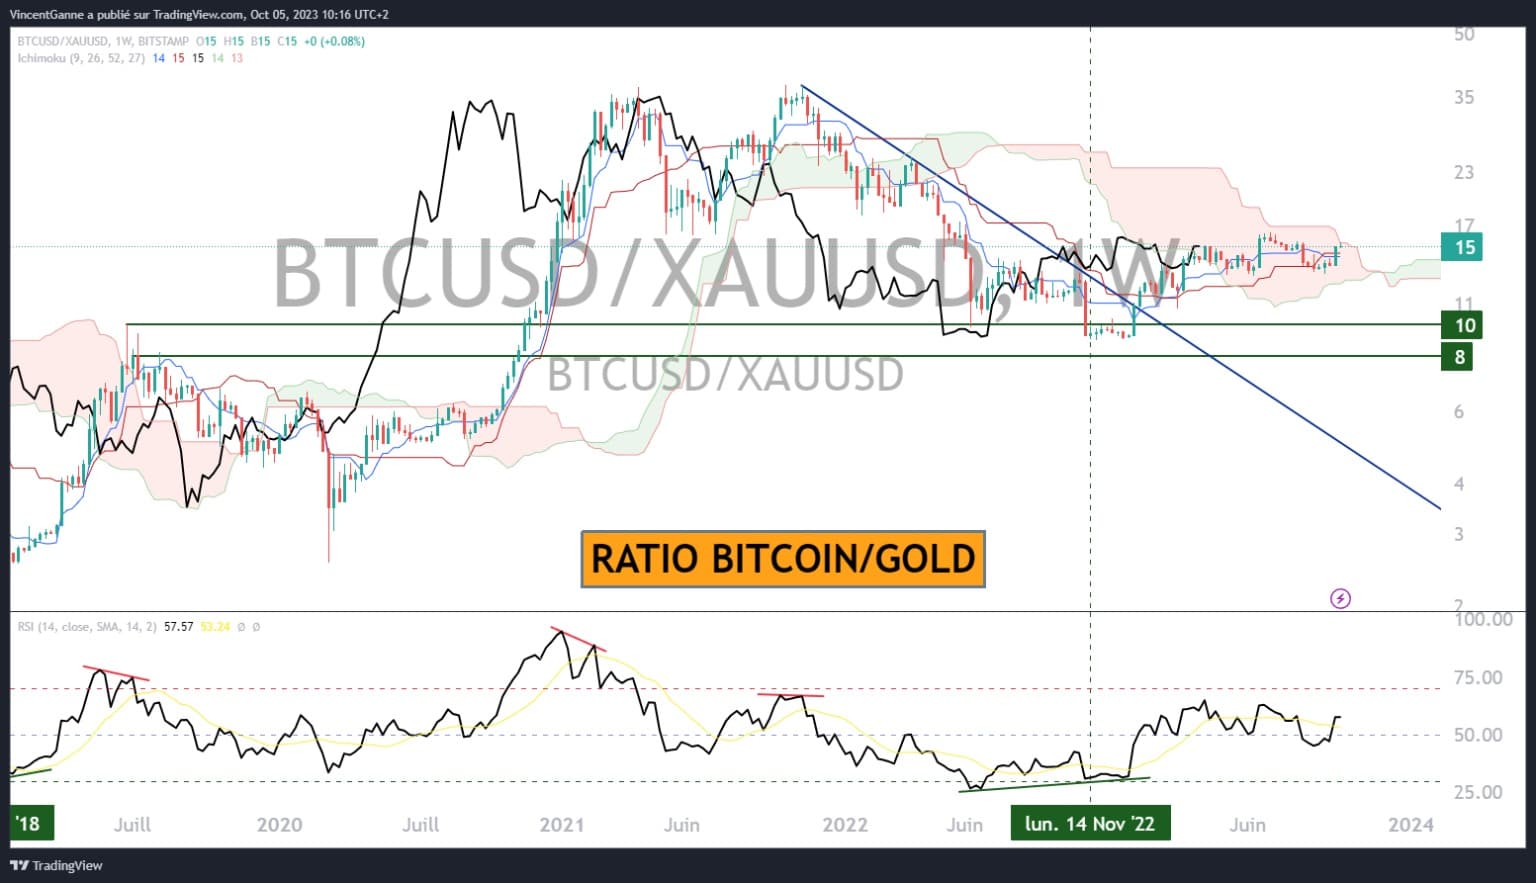 Wykres przedstawiający stosunek Bitcoin/GOLD w tygodniowym horyzoncie czasowym